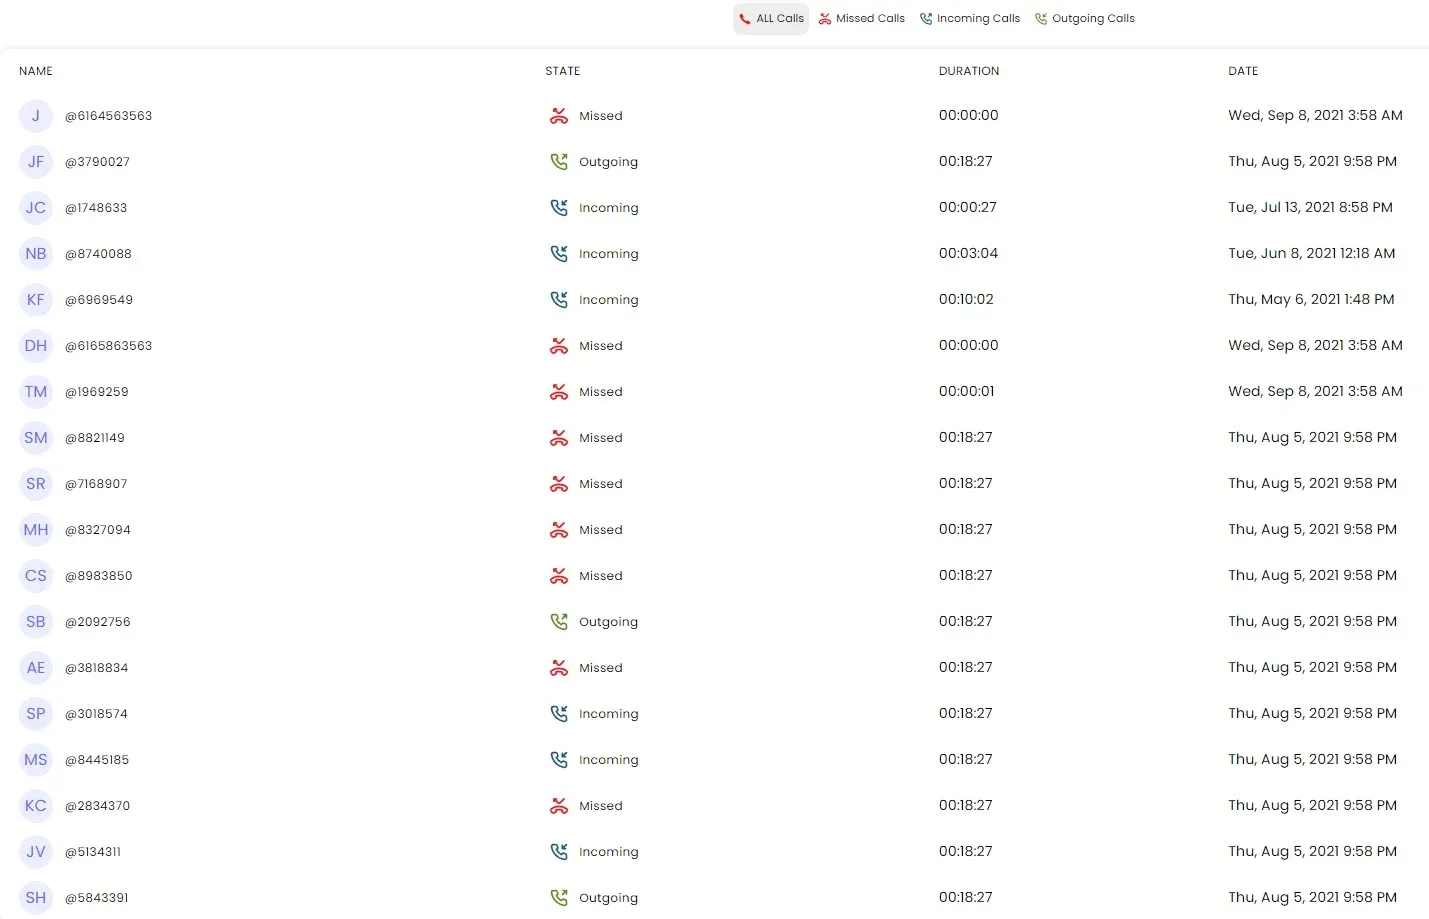 Capturas de pantalla del historial de llamadas de la cuenta real de SpyX.